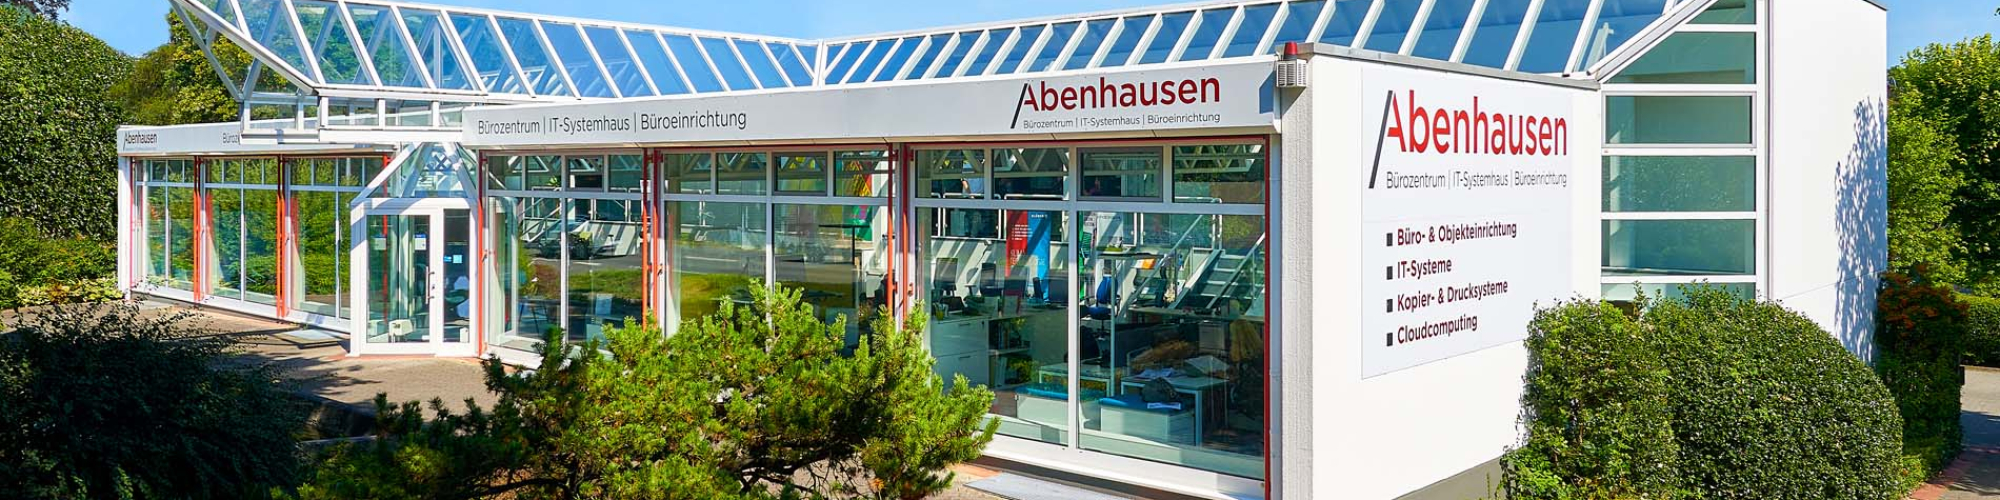 Abenhausen Büro- und Datentechnik GmbH